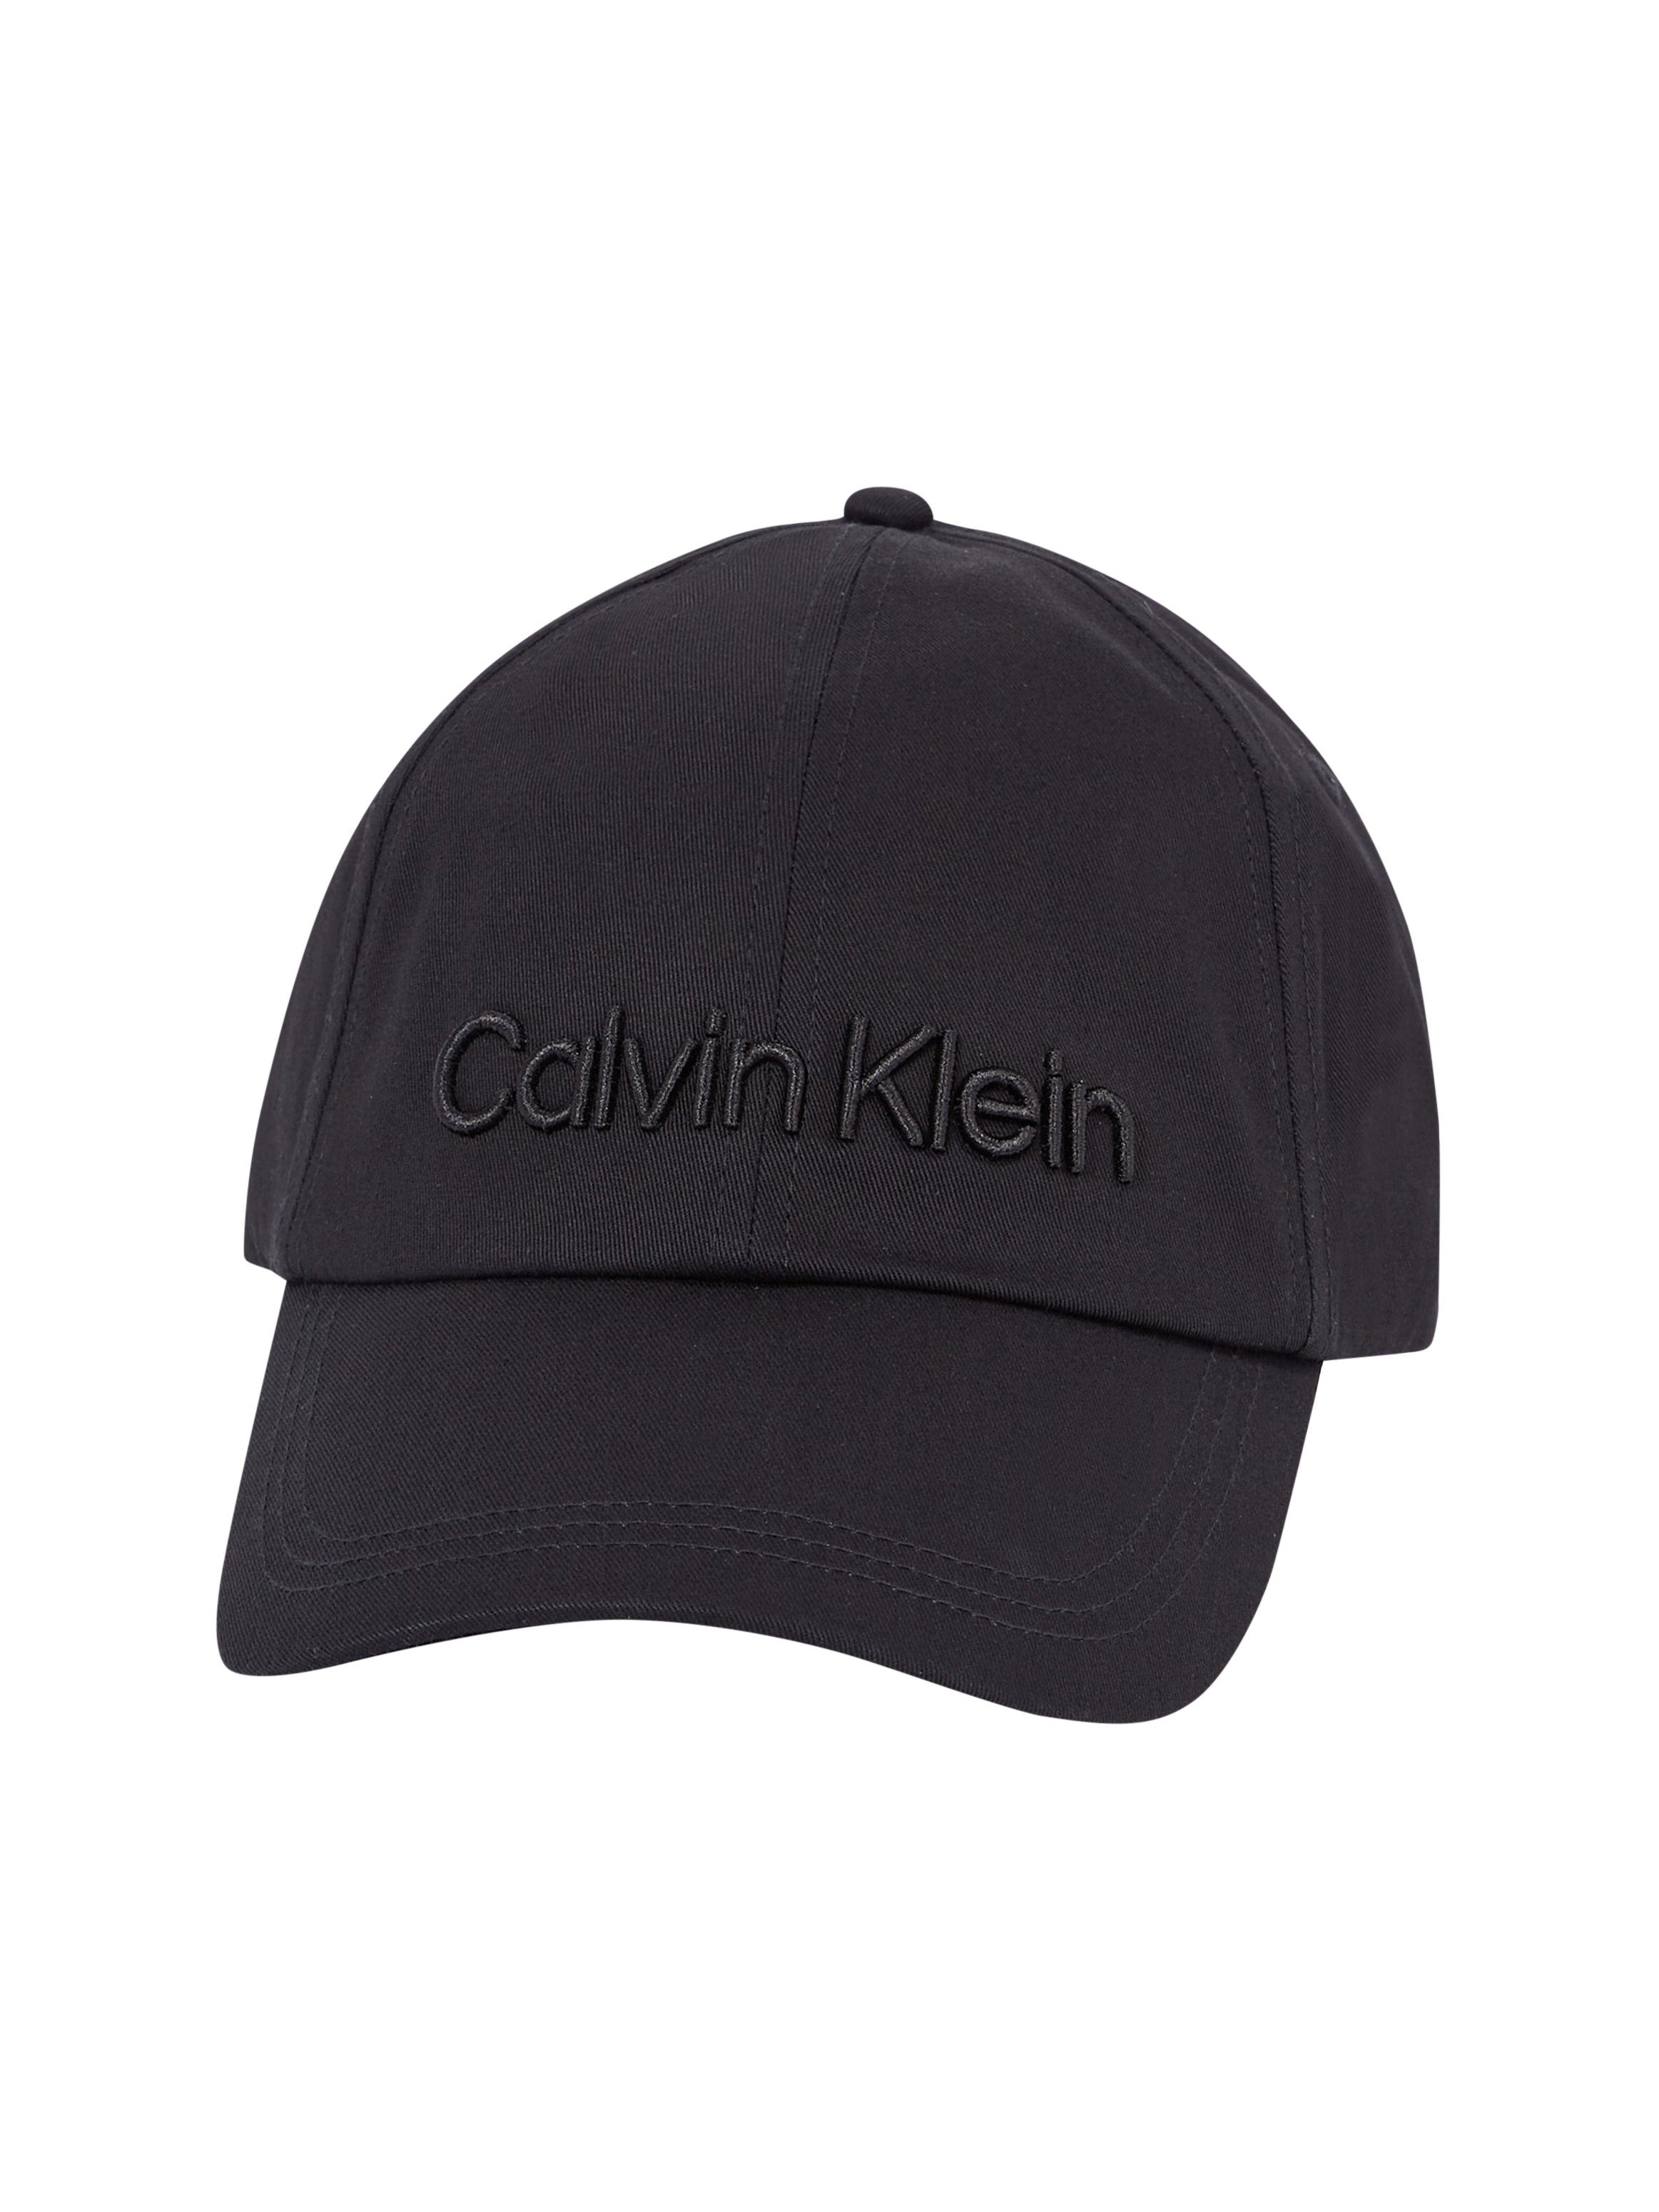 EMBROIDERY CAP BB CALVIN Baseball Klein BLACK Cap Calvin